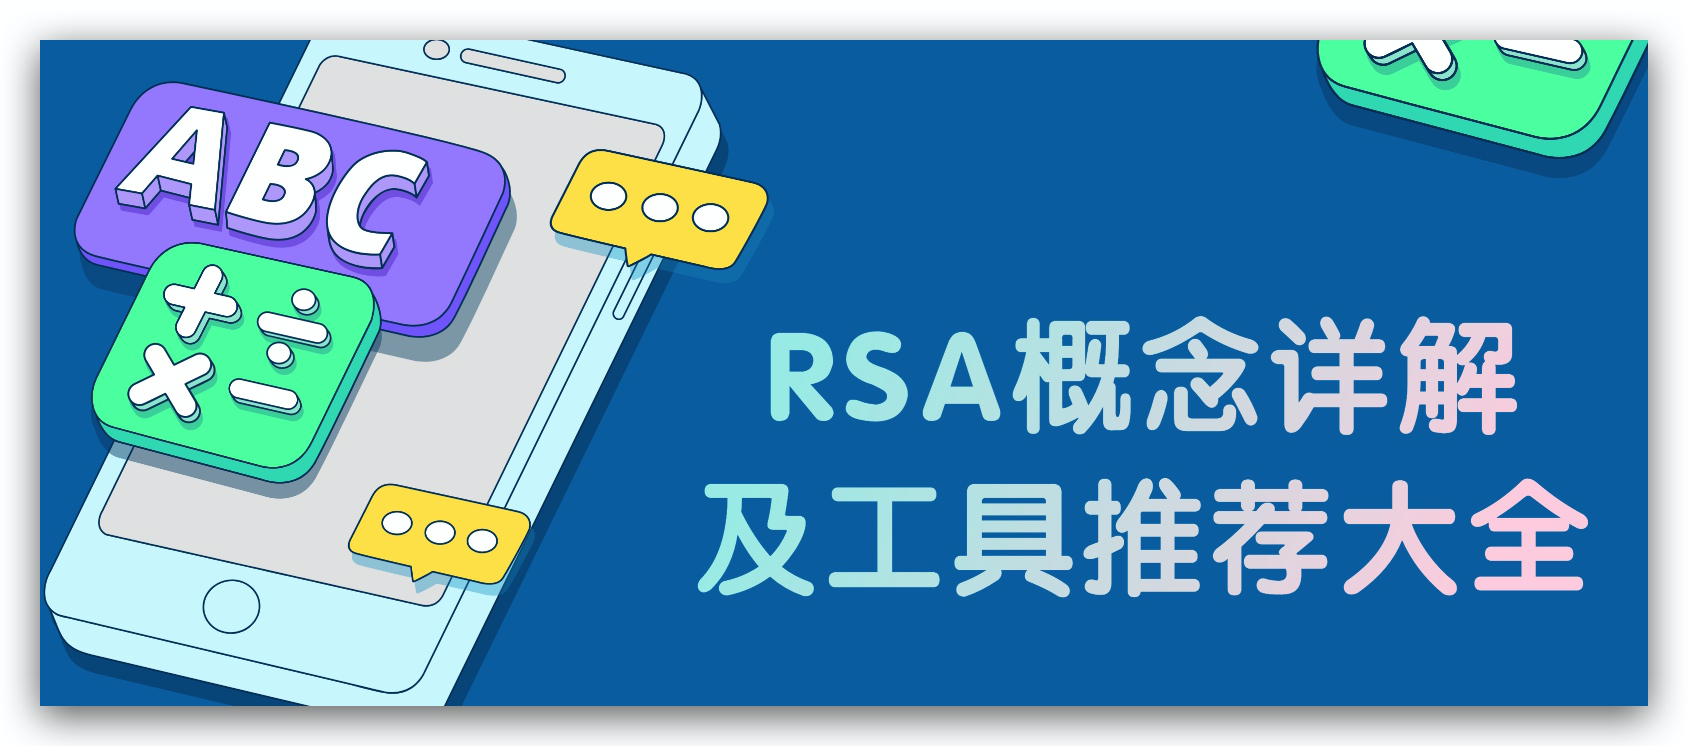 4.4 RSA概念详解及工具推荐大全 – lmn-【密码学】小世界-安全文库-NGC660安全实验室